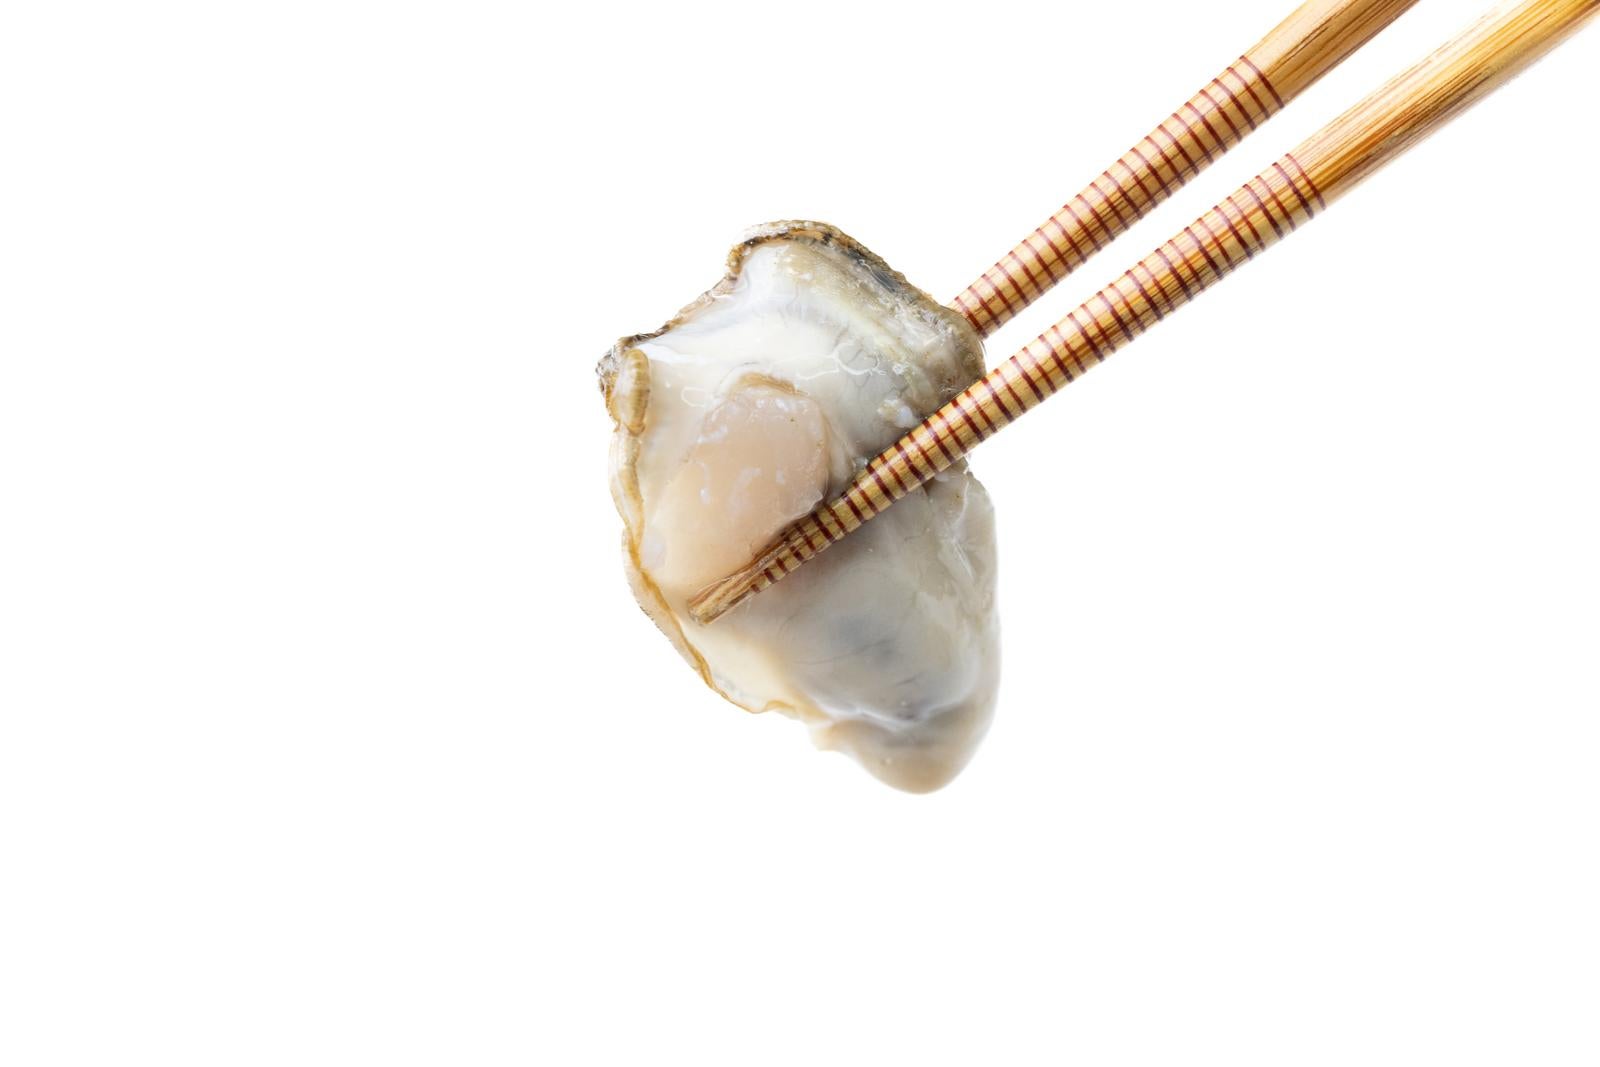 「箸で摘まんだ生牡蠣の詩」の写真